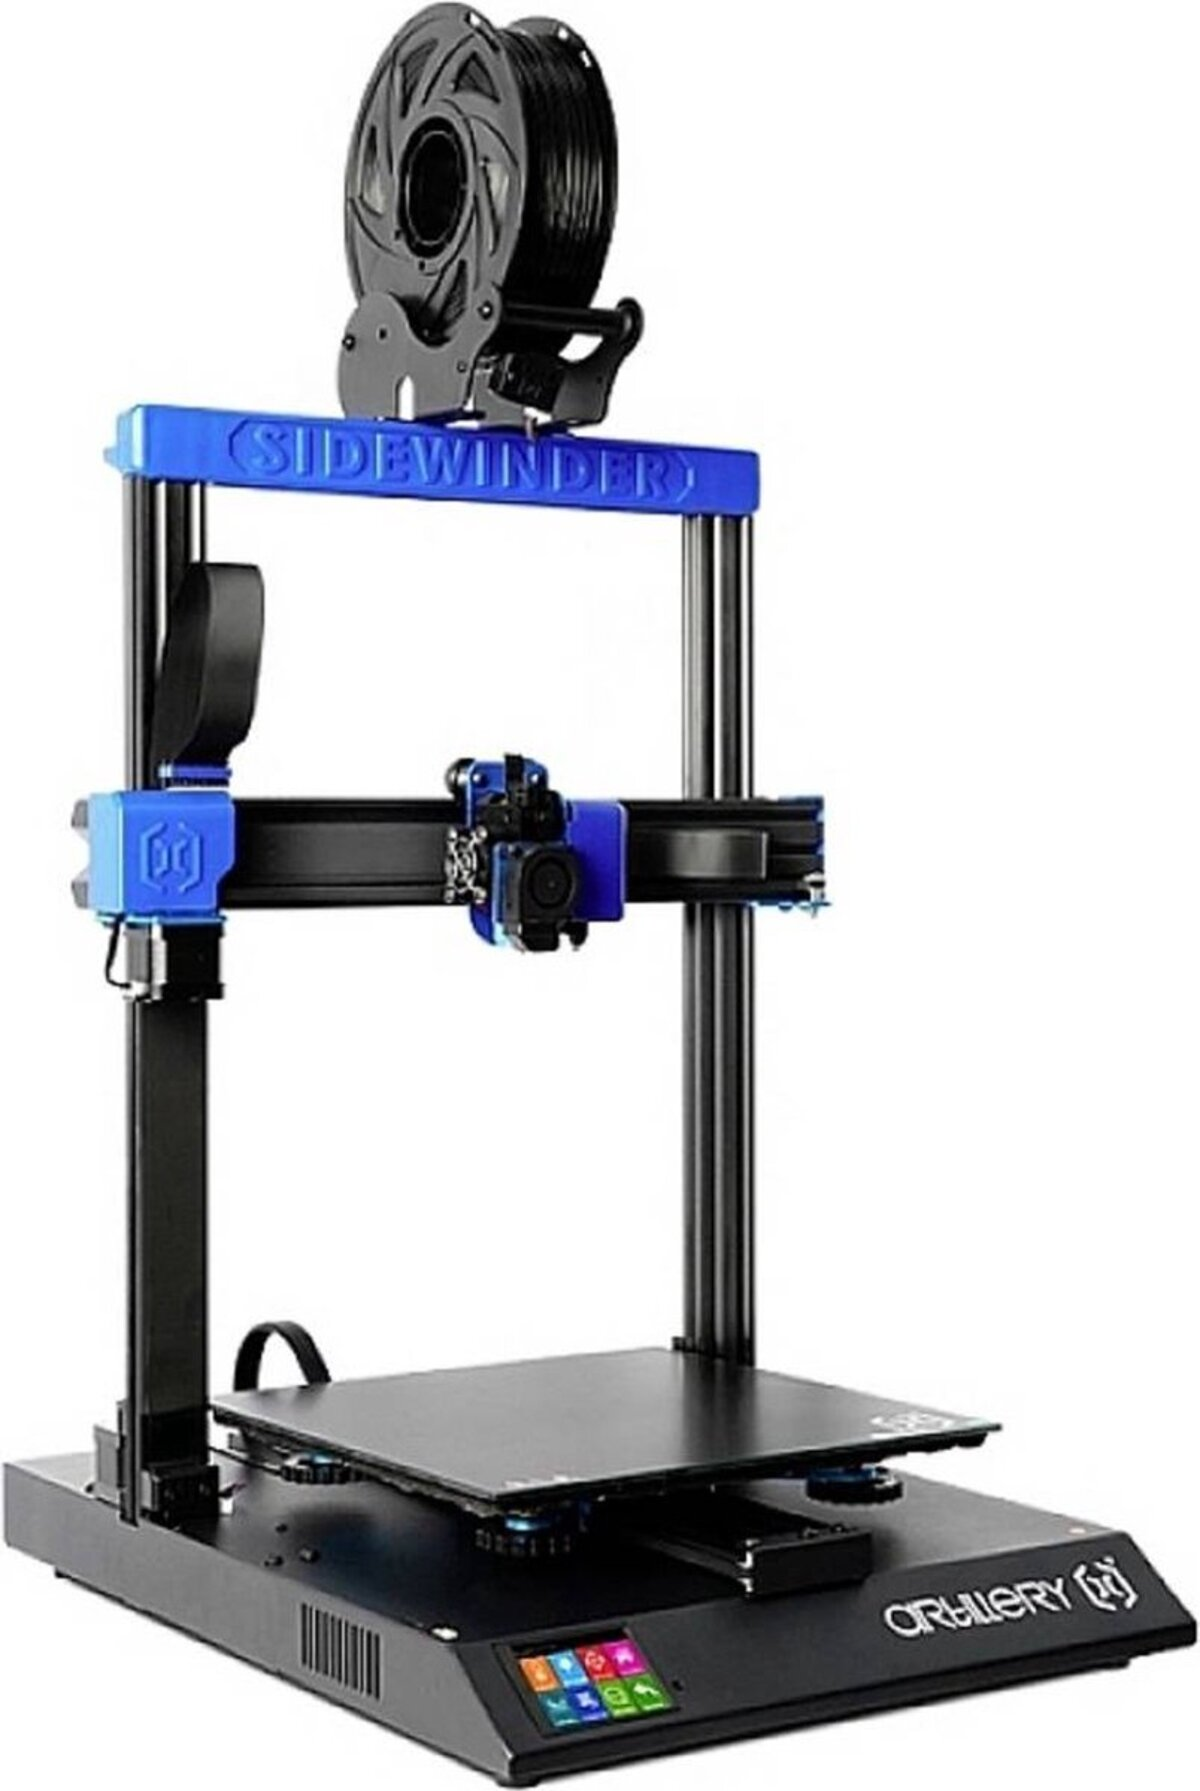 ARTILLERY Sidewinder X2 Extruder Drive FDM Direct 3D Printer 300x300x400mm Auto-Level 3D Drucker